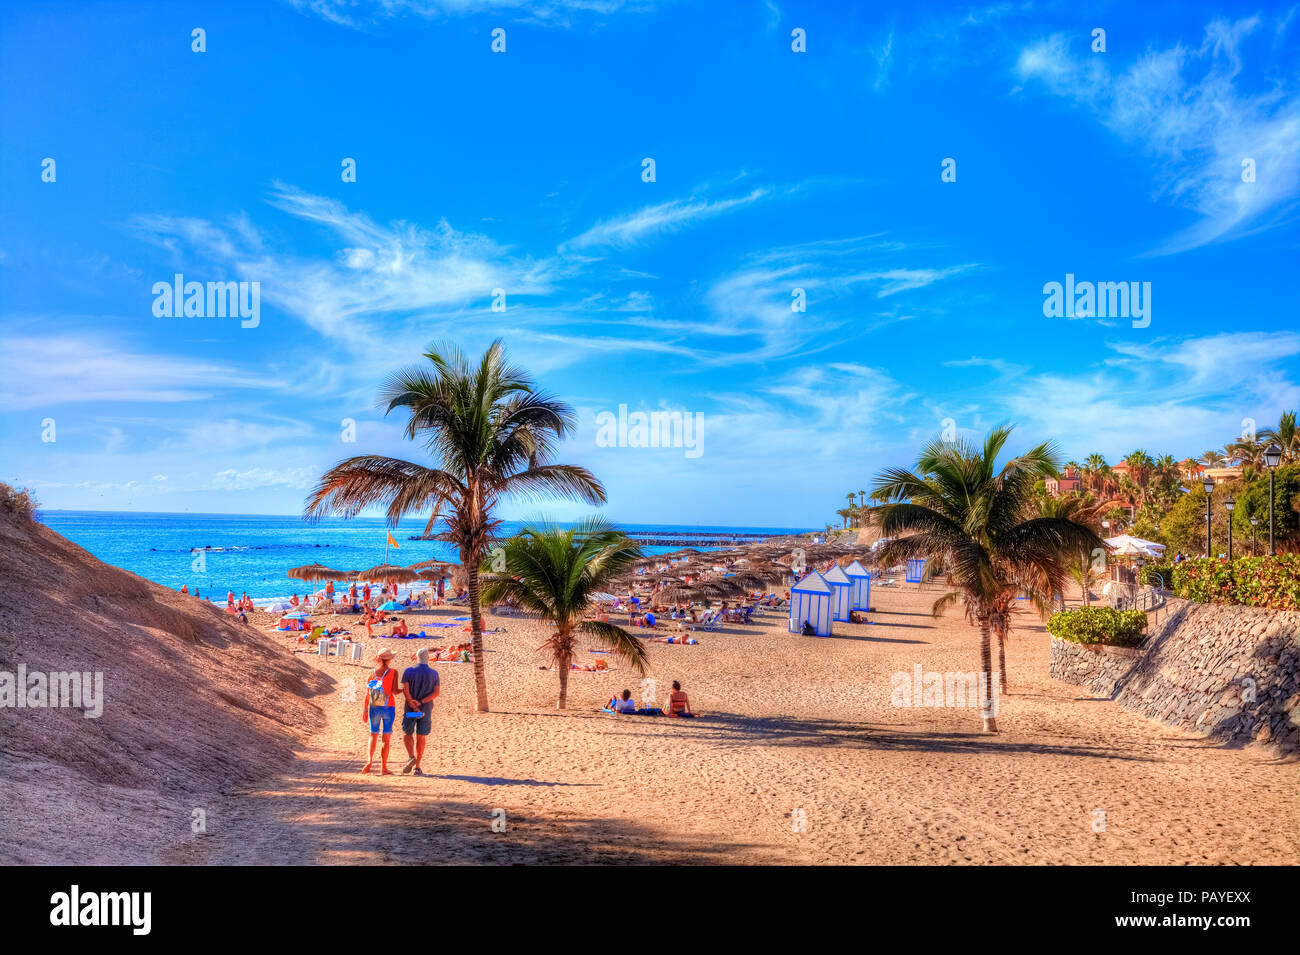 Les gens sur la plage d'El Duque appréciant des vacances sur la côte d'Adeje à Tenerife, Espagne île des Canaries Banque D'Images